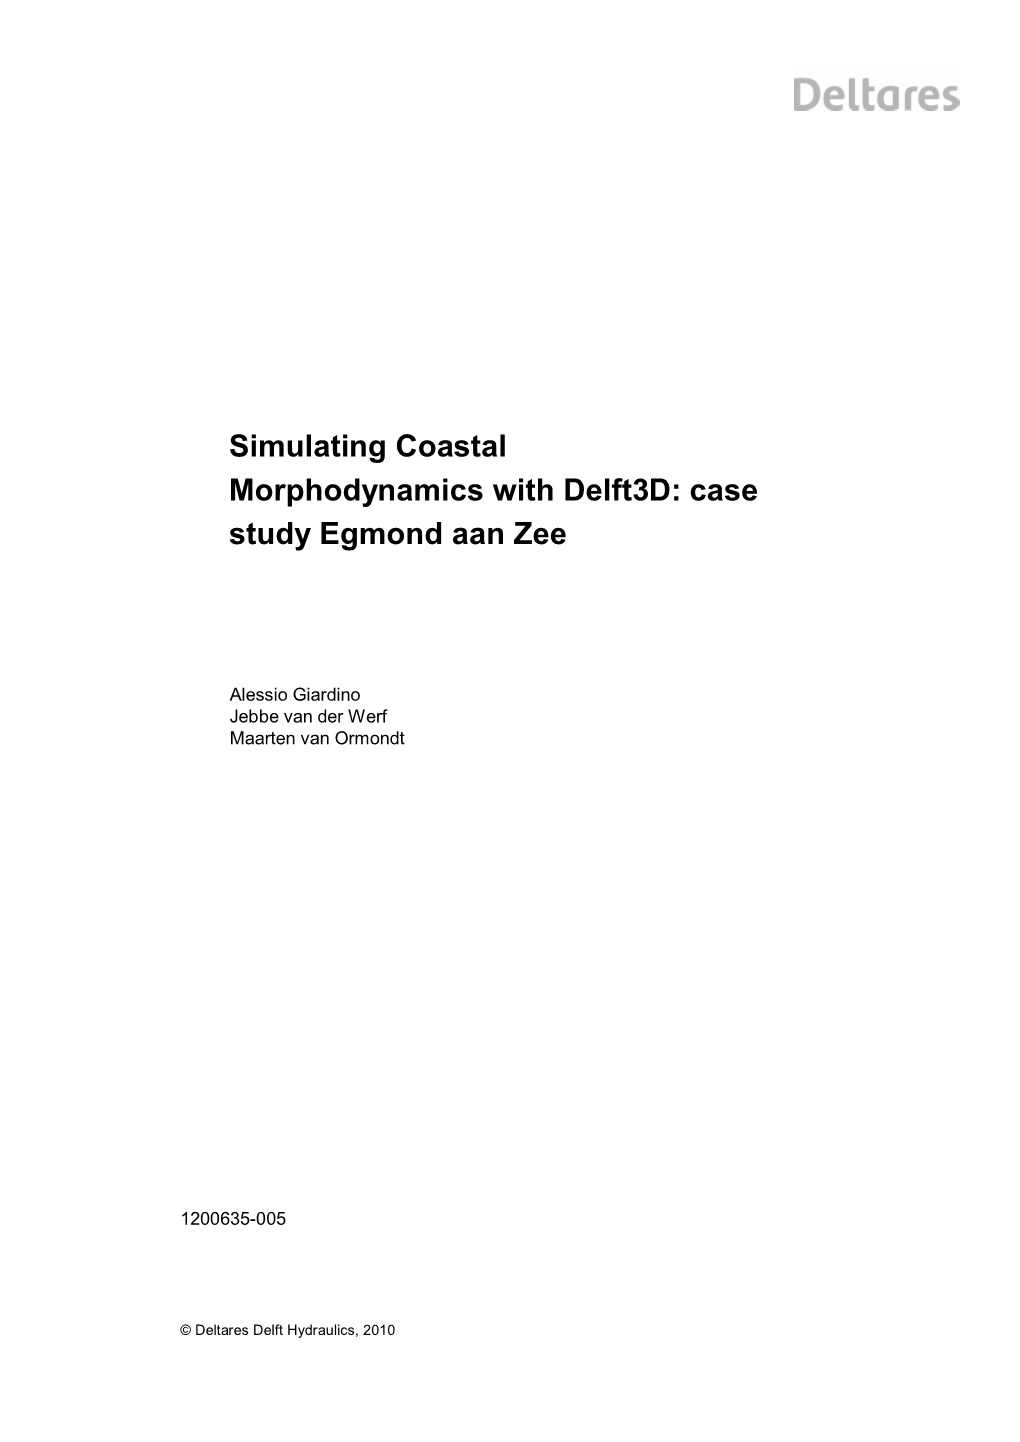 Simulating Coastal Morphodynamics with Delft3d: Case Study Egmond Aan Zee